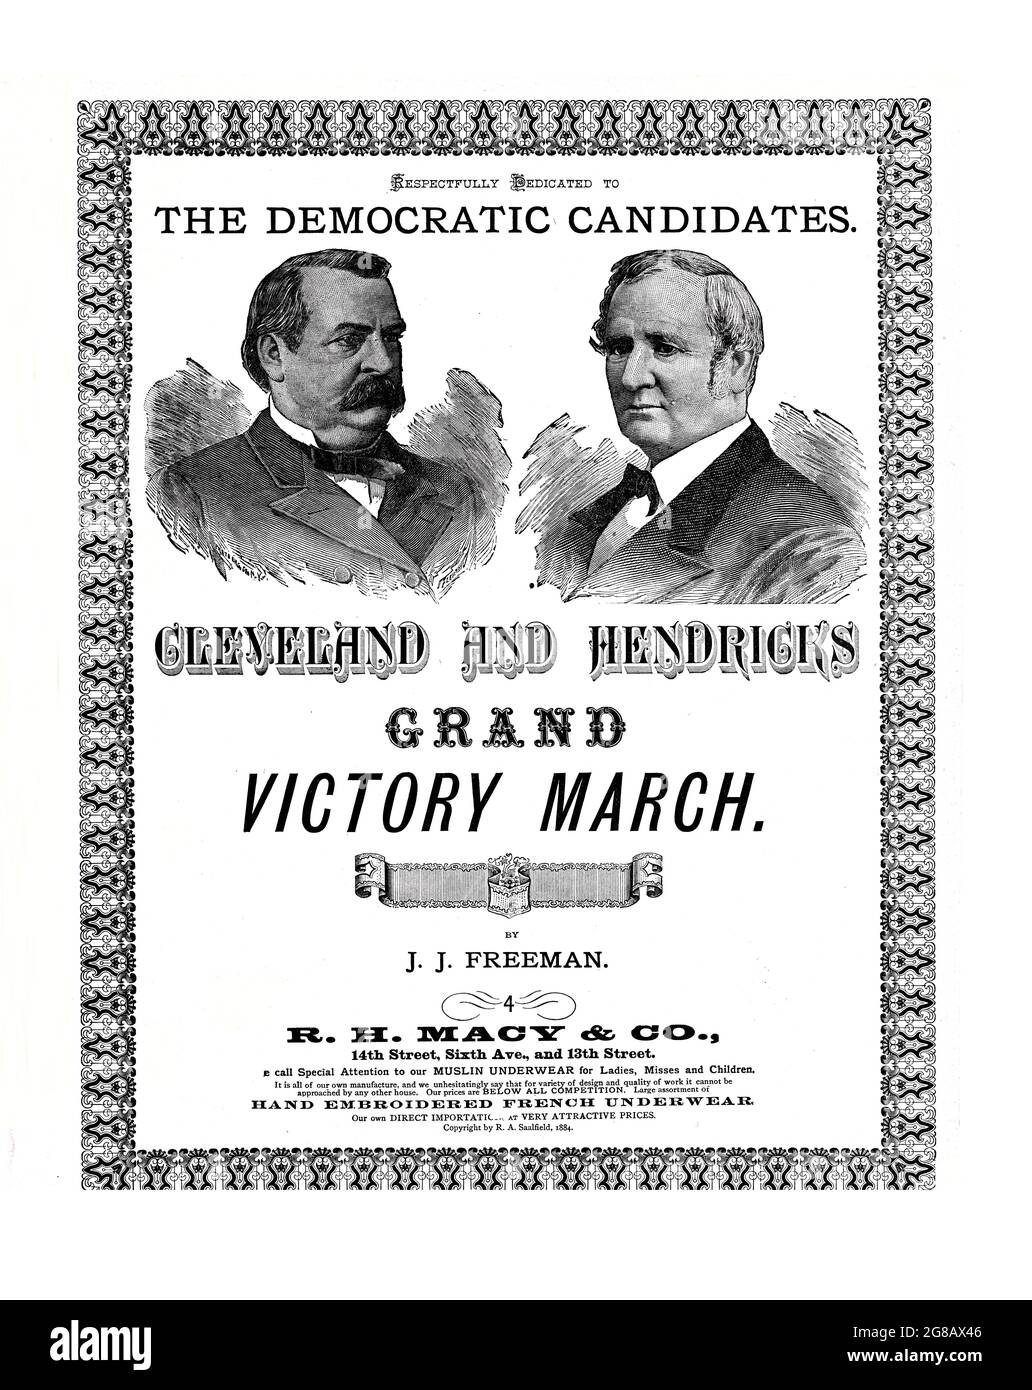 Cleveland y Hendricks Grand Victory March,1884 partitura de la campaña presidencial electoral para Grover Cleveland y Thomas Hendricks con retratos Foto de stock